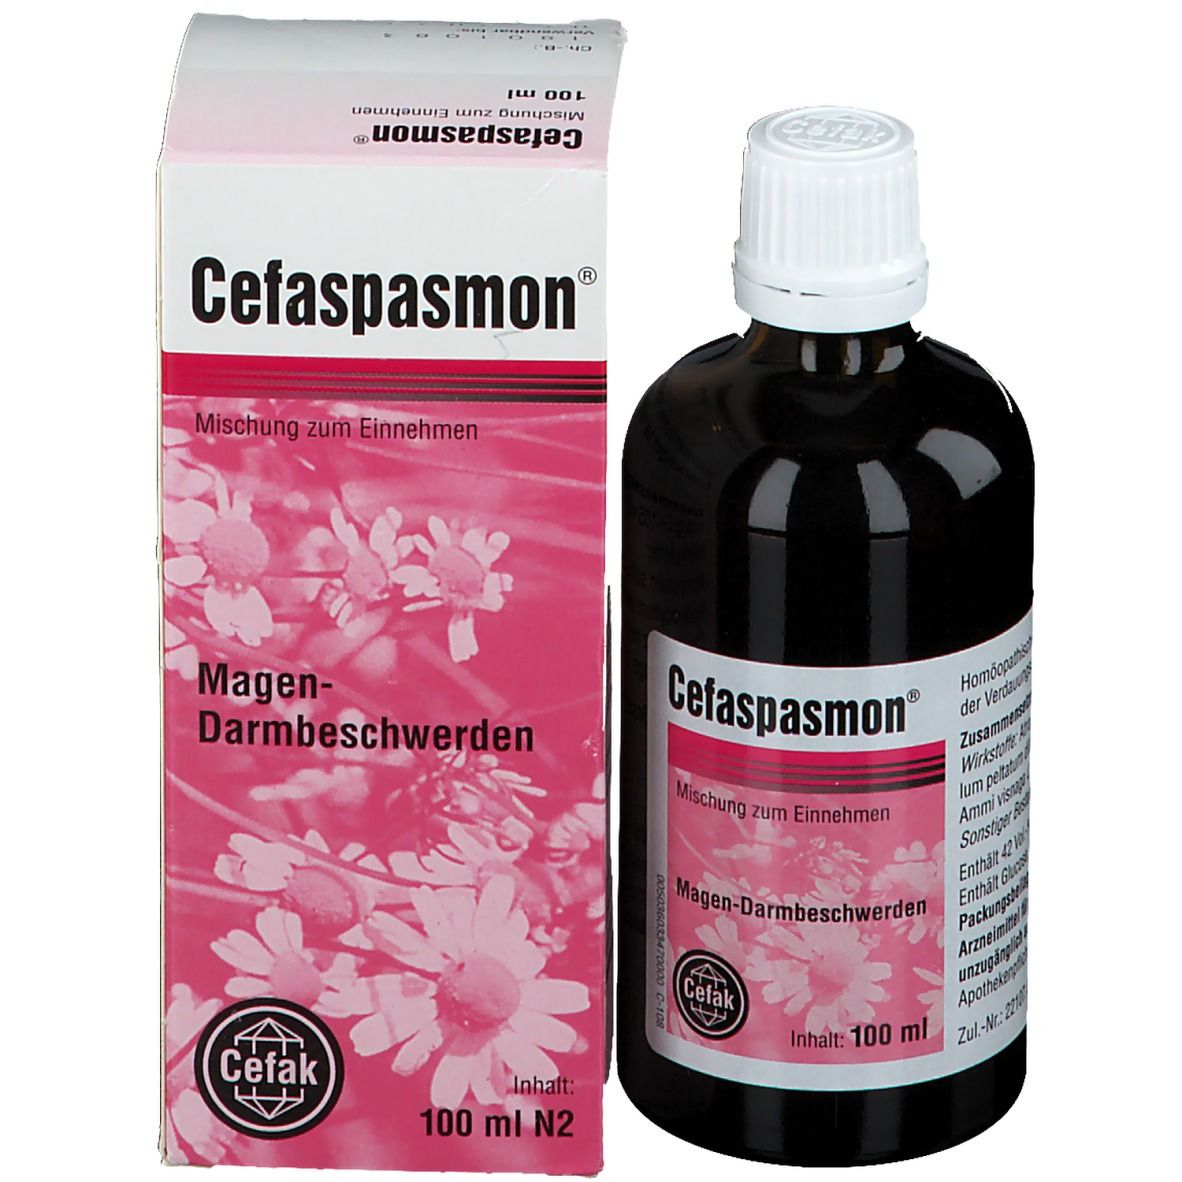 Cefaspasmon®